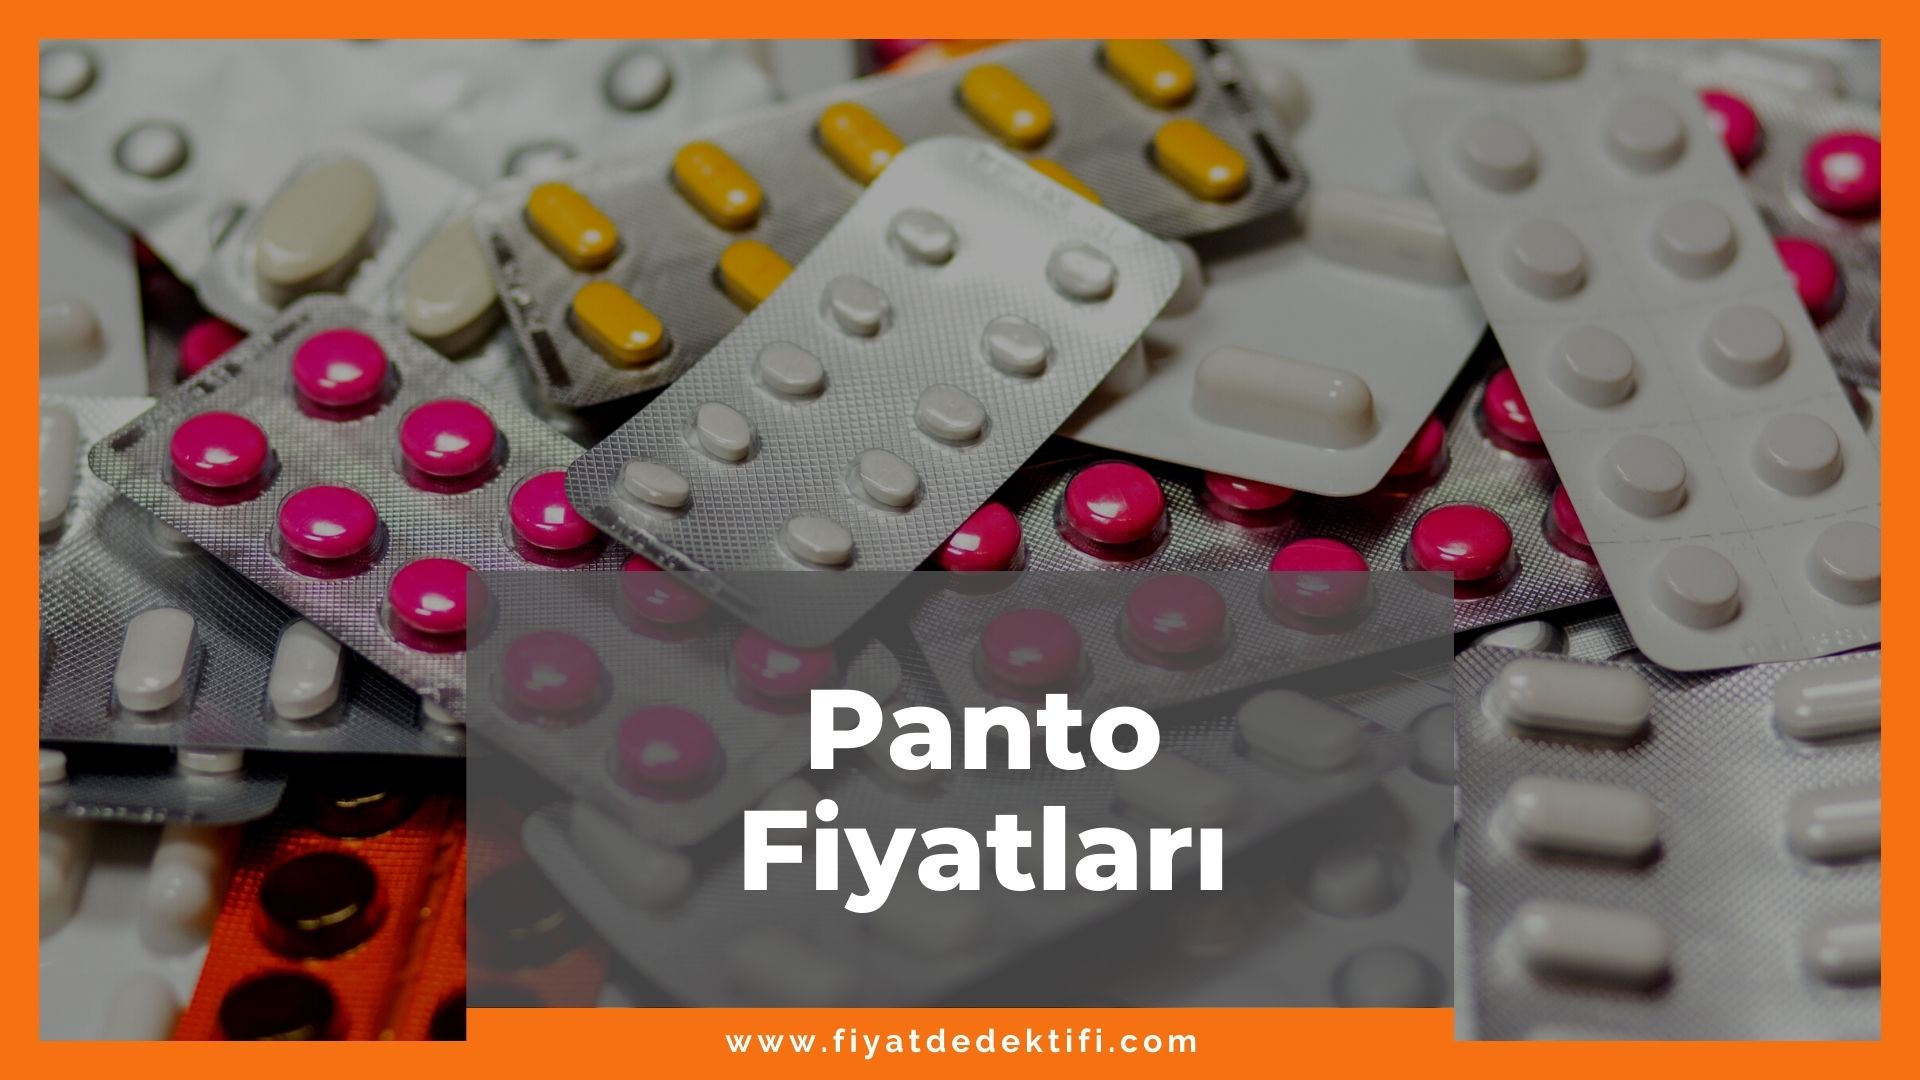 Panto Fiyat 2021, Panto Fiyatı, Panto 40 mg Fiyatı, panto zamlandı mı, panto zamlı fiyatı ne kadar kaç tl oldu